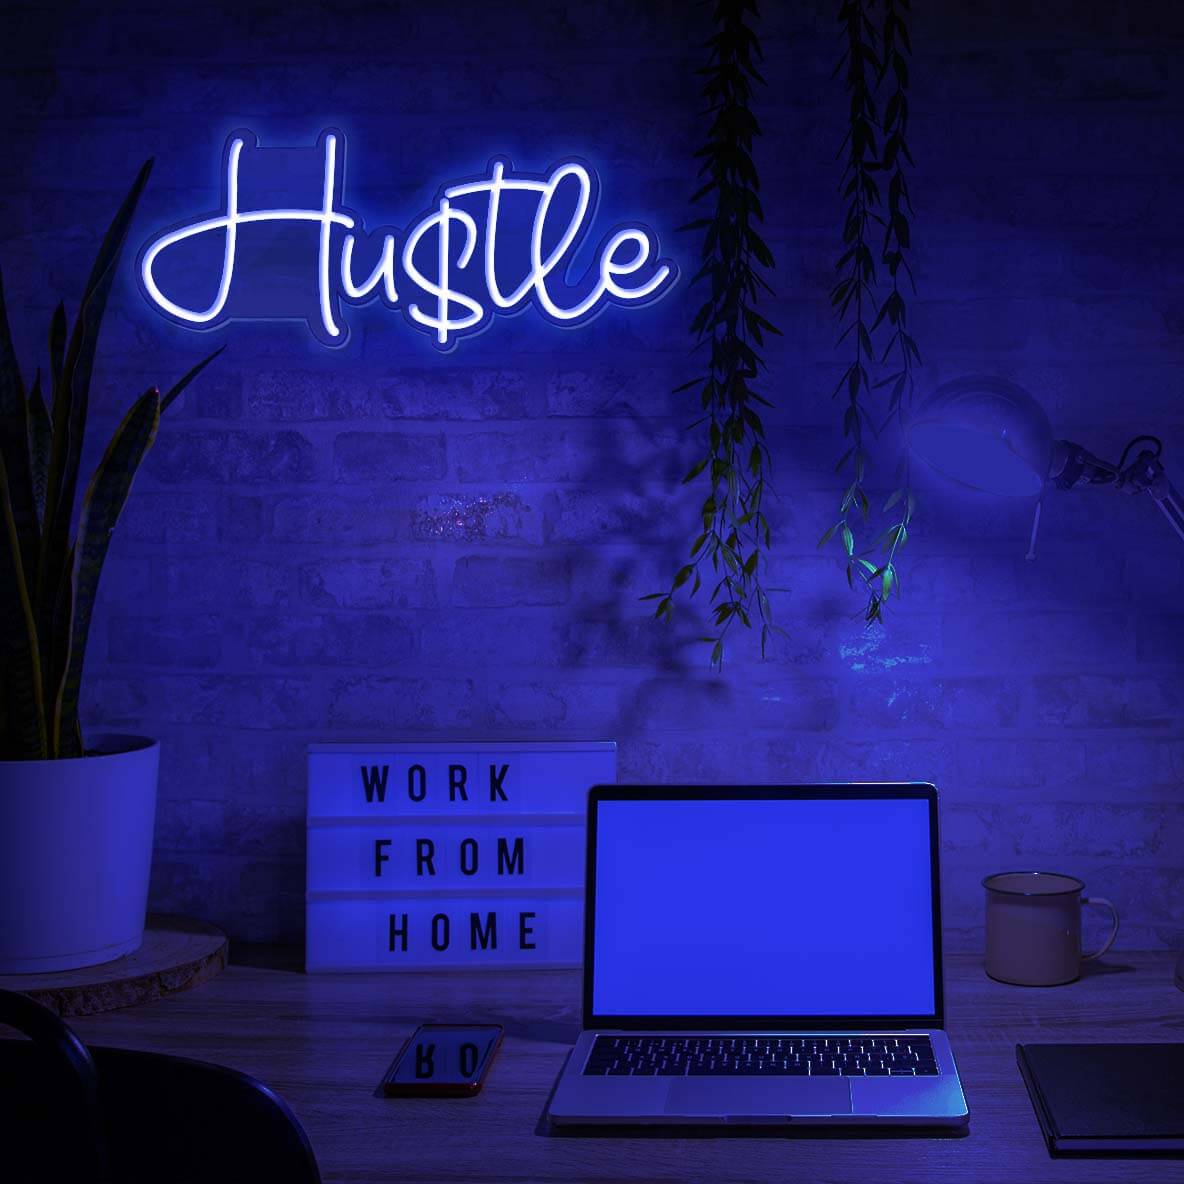 Hustle Neon Sign Led Light (5)